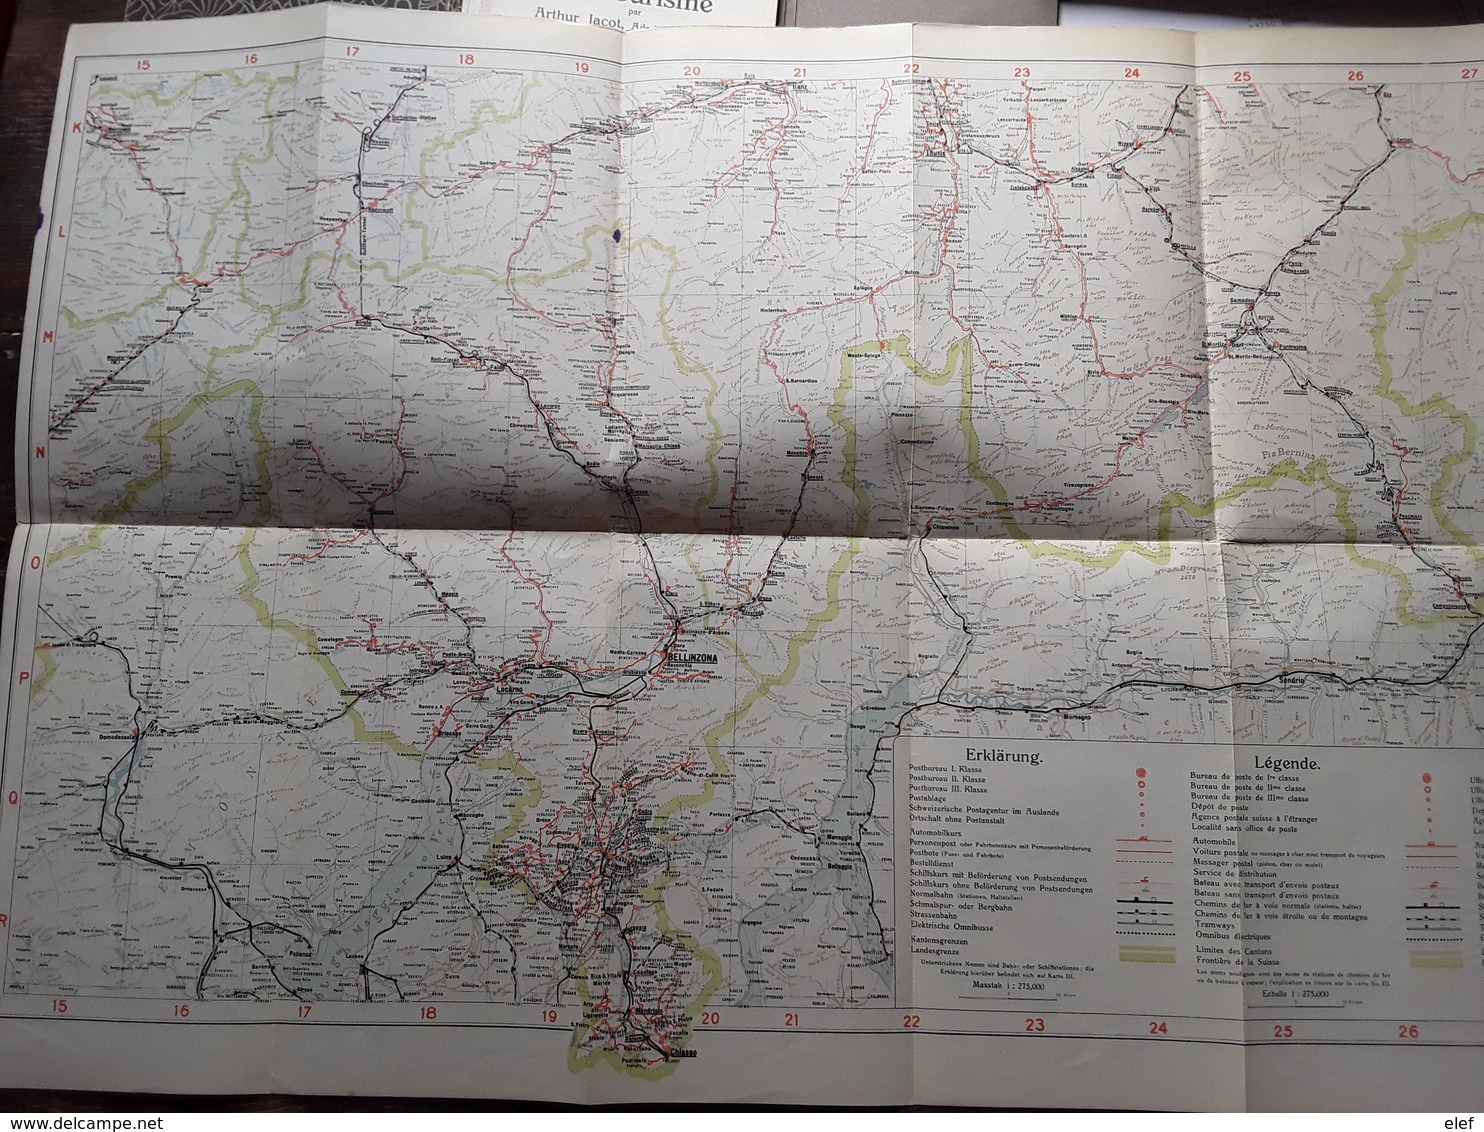 Suisse Guide Cartes Schweizerische Verkehrs Karte ( 4),mit Orts Lexicon Arthur Jacot 1926 Verlag Frey Kratz Zurich, Tb R - Suiza